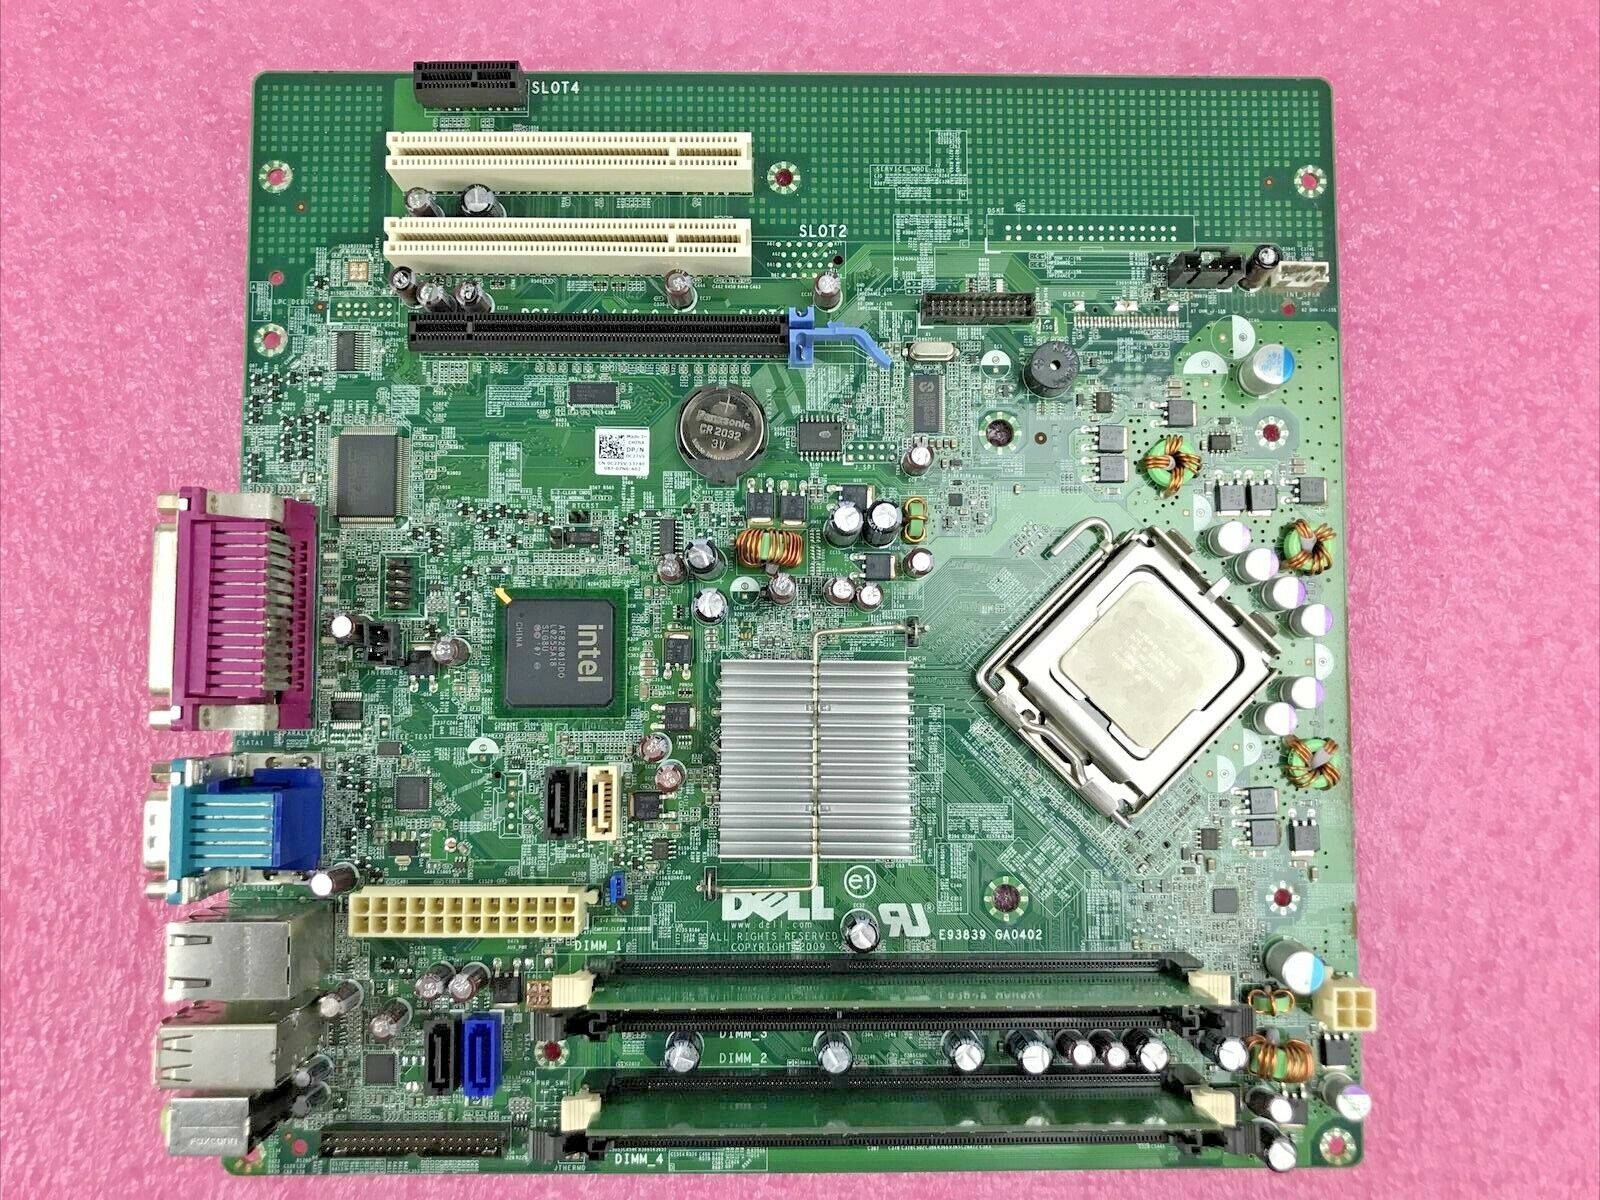 Dell OC27VV Motherboard Intel Core 2 Duo E8600 3.33GHz 2GB RAM